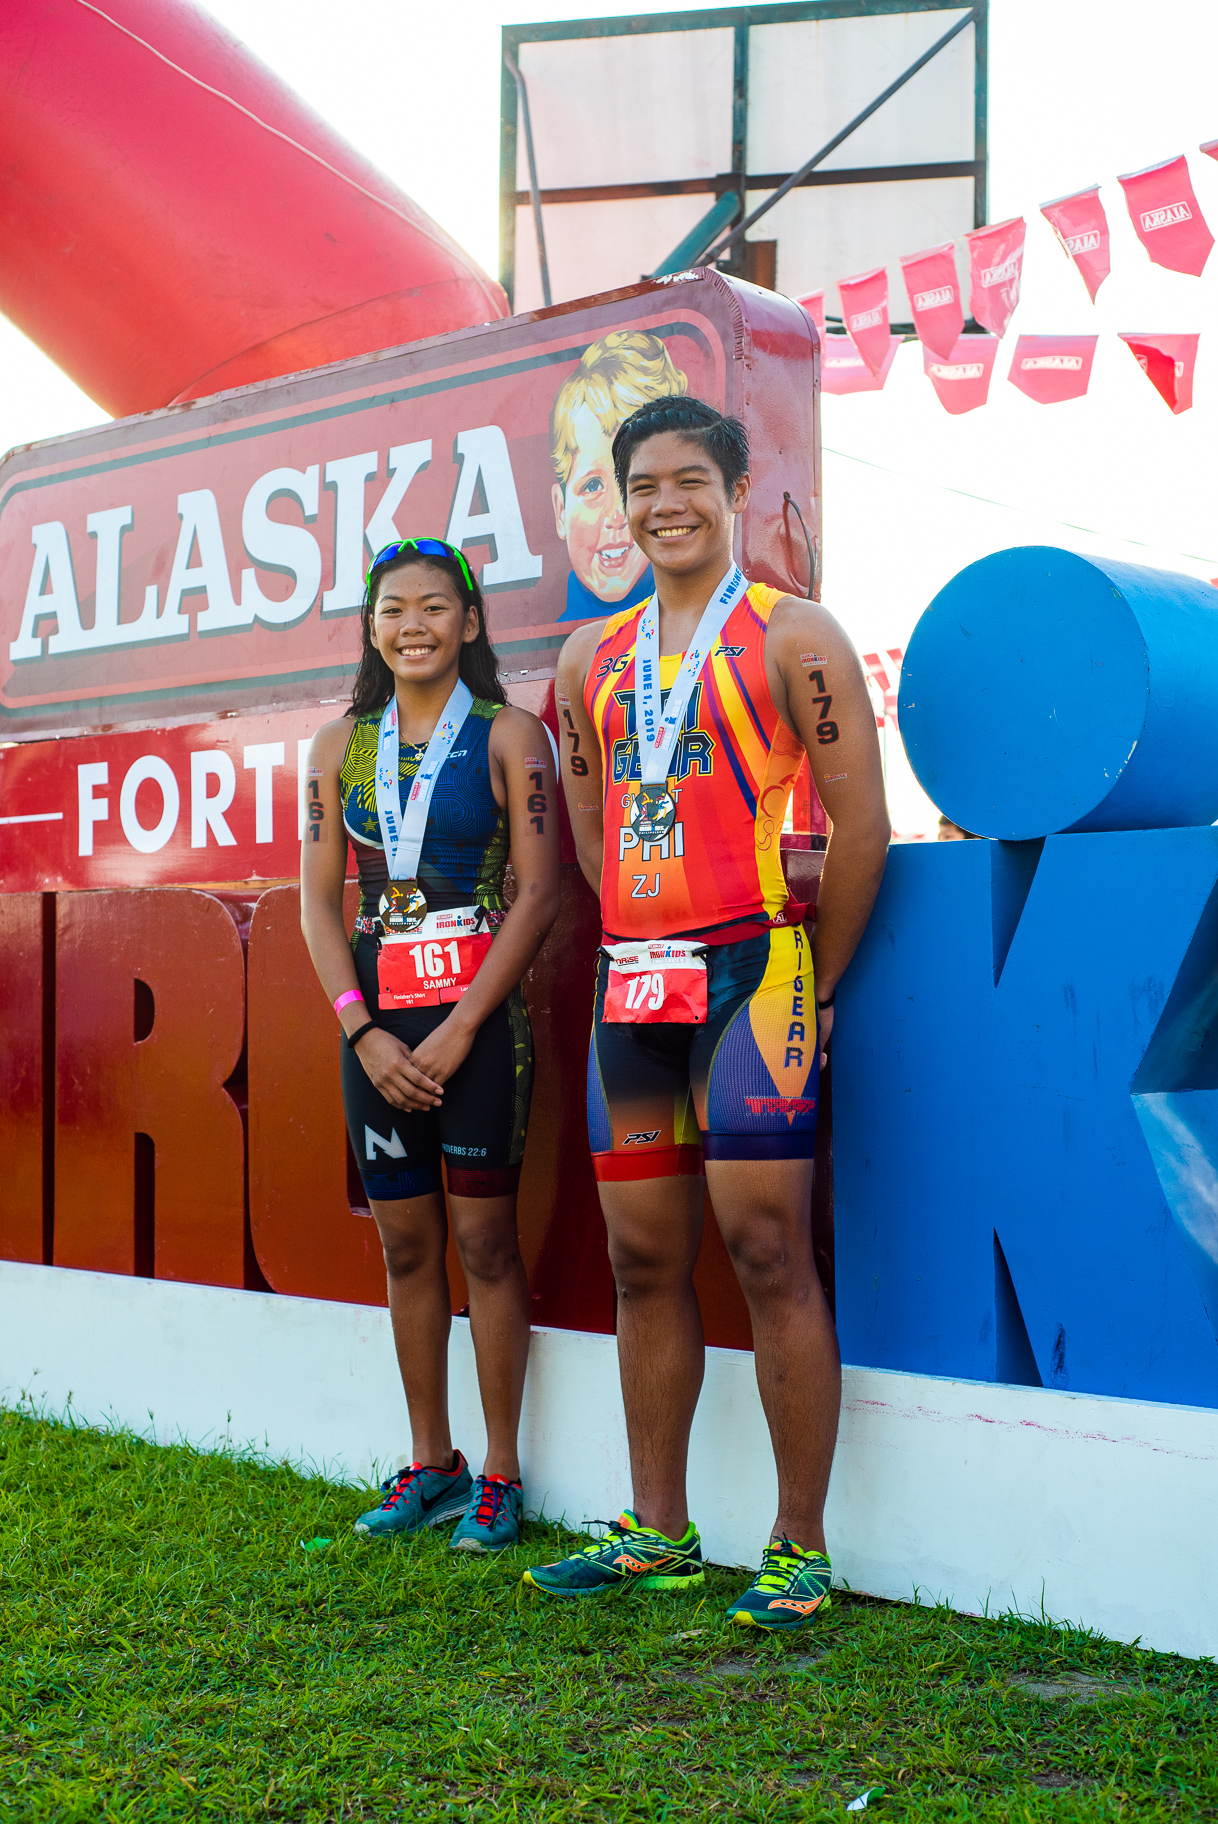 Alaska IronKids champs Samantha Corpuz and Zedrick Borja